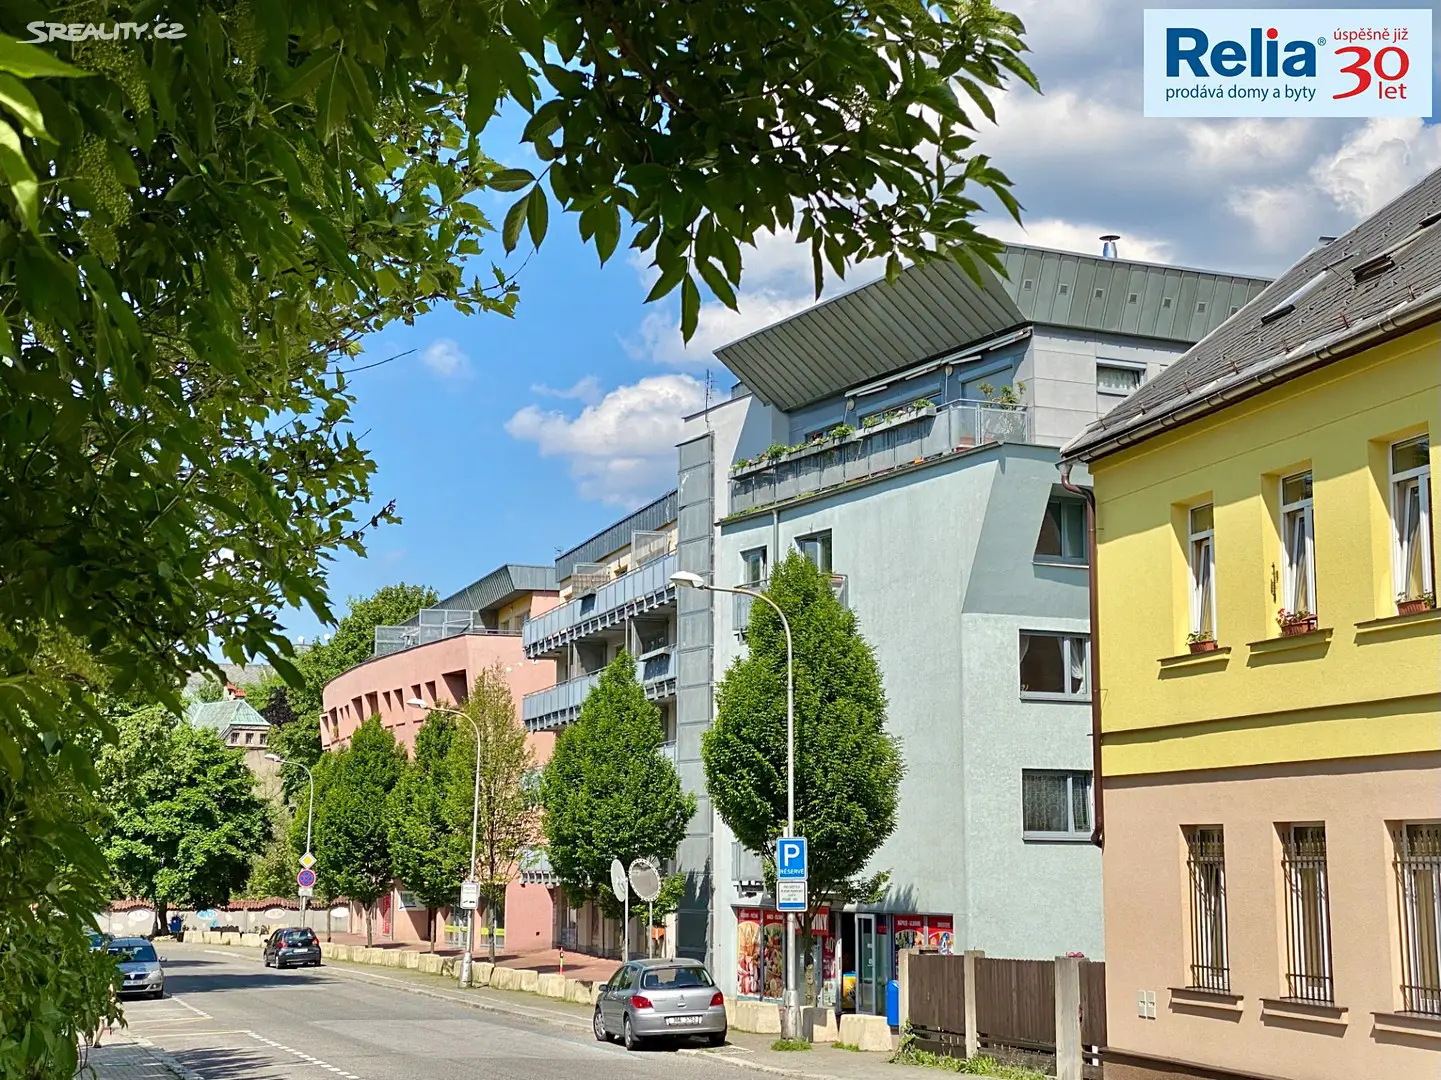 Pronájem bytu 1+kk 48 m², Tyršova, Liberec - Liberec V-Kristiánov